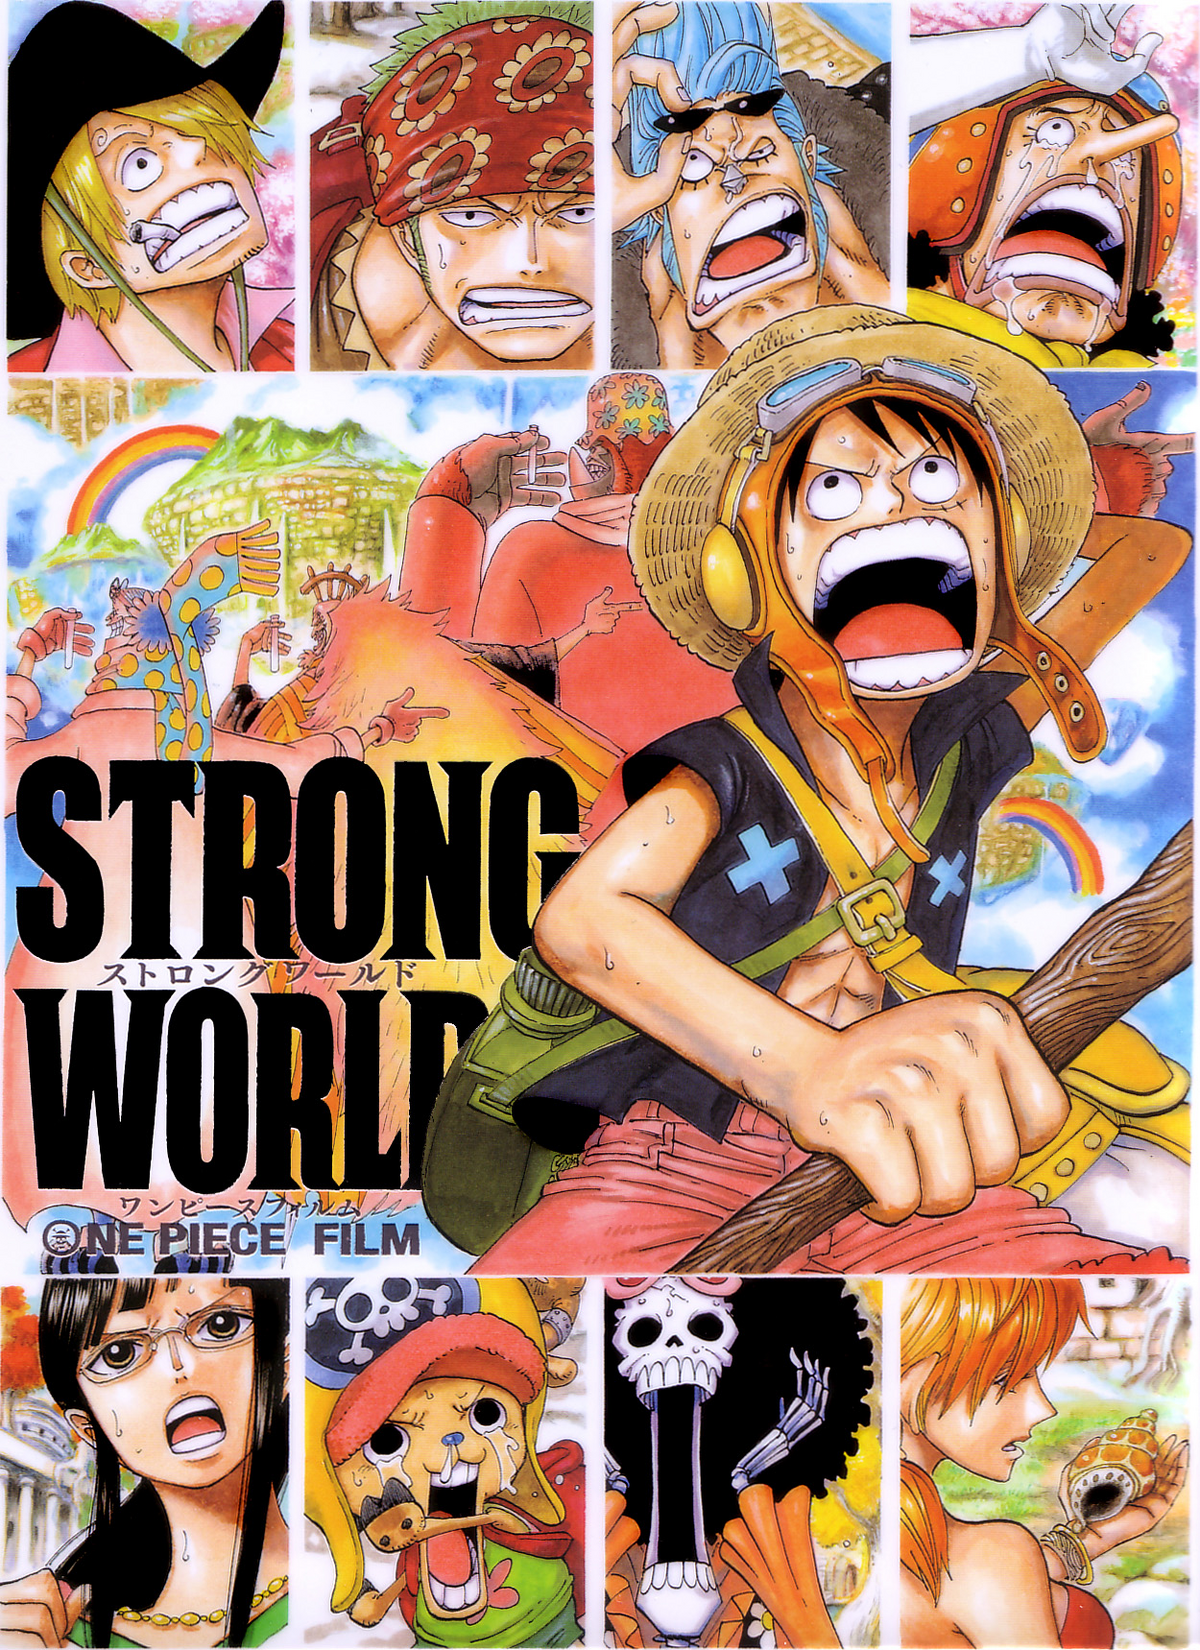 Crunchyroll.pt - [RUMOR] One Piece Film: Gold, longa mais recente de série,  pode ser lançado dublado no Brasil ano que vem!